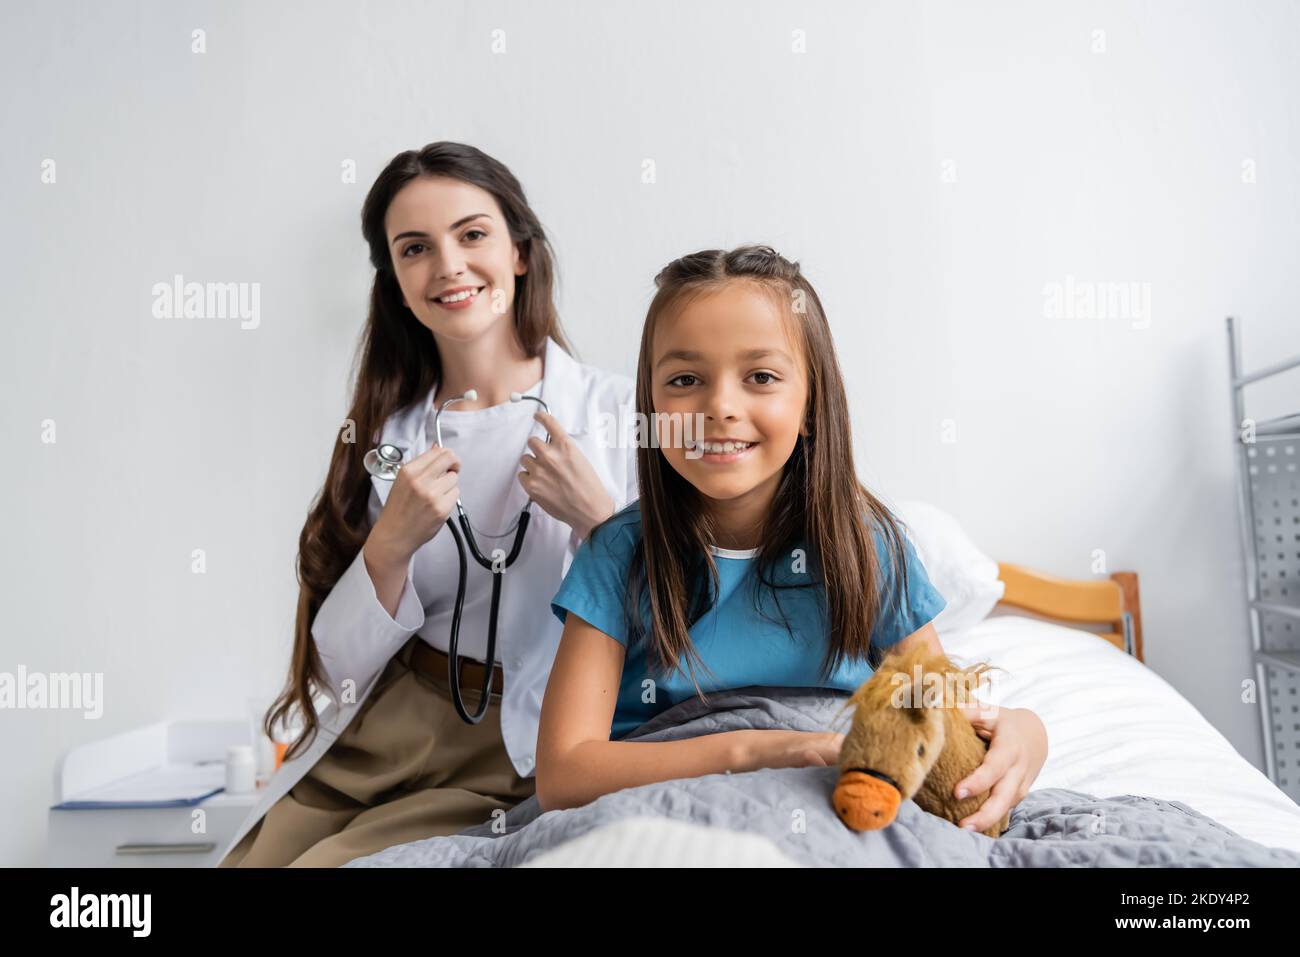 Bambino sorridente che tiene il giocattolo molle vicino al medico con stetoscopio che guarda la macchina fotografica nel reparto dell'ospedale, immagine di scorta Foto Stock